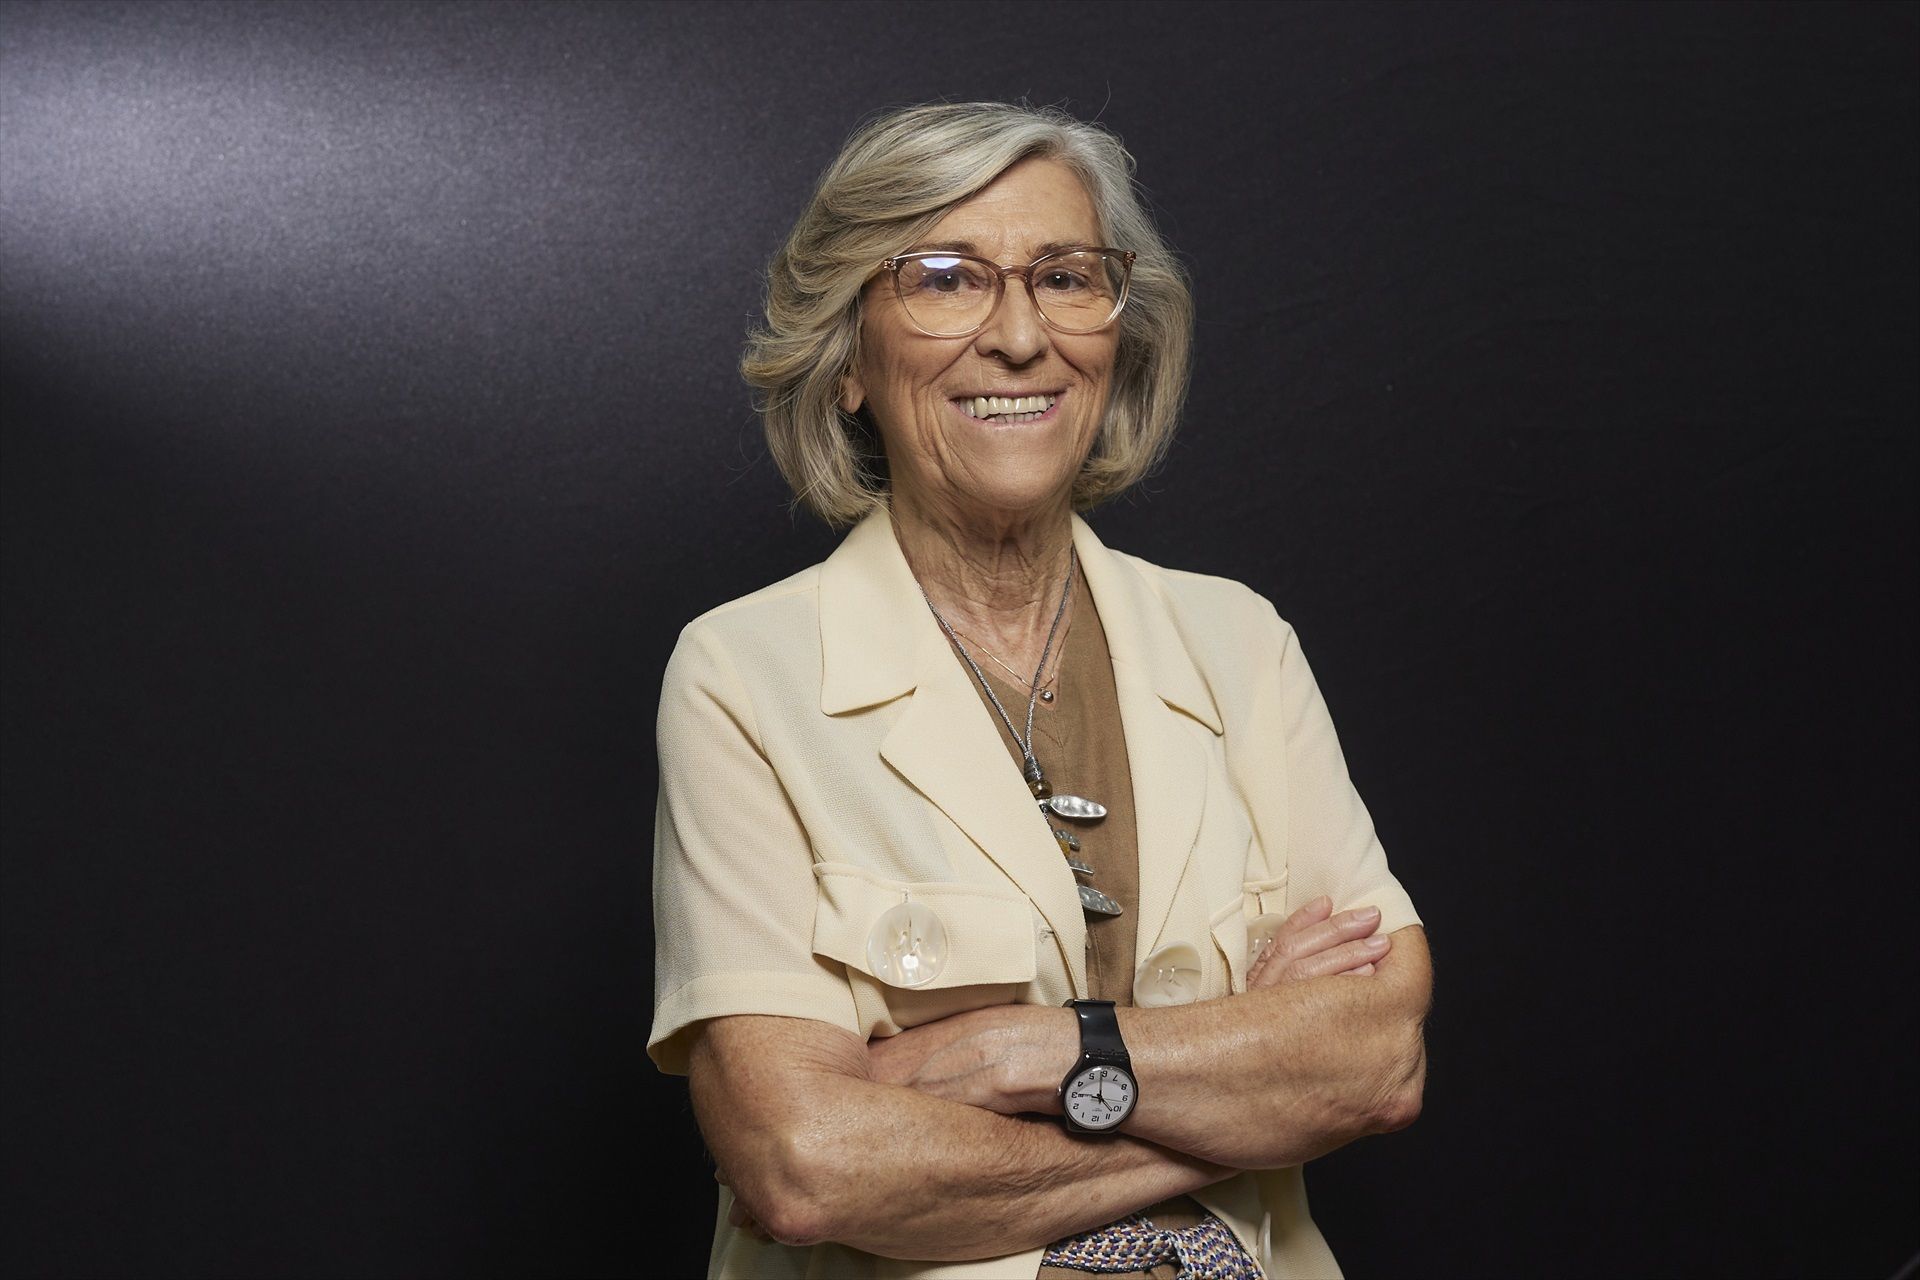 Ana Crespo, primera mujer que preside la RAC: "Uno se mide por sus cualidades, no por el género" (Europa Press)